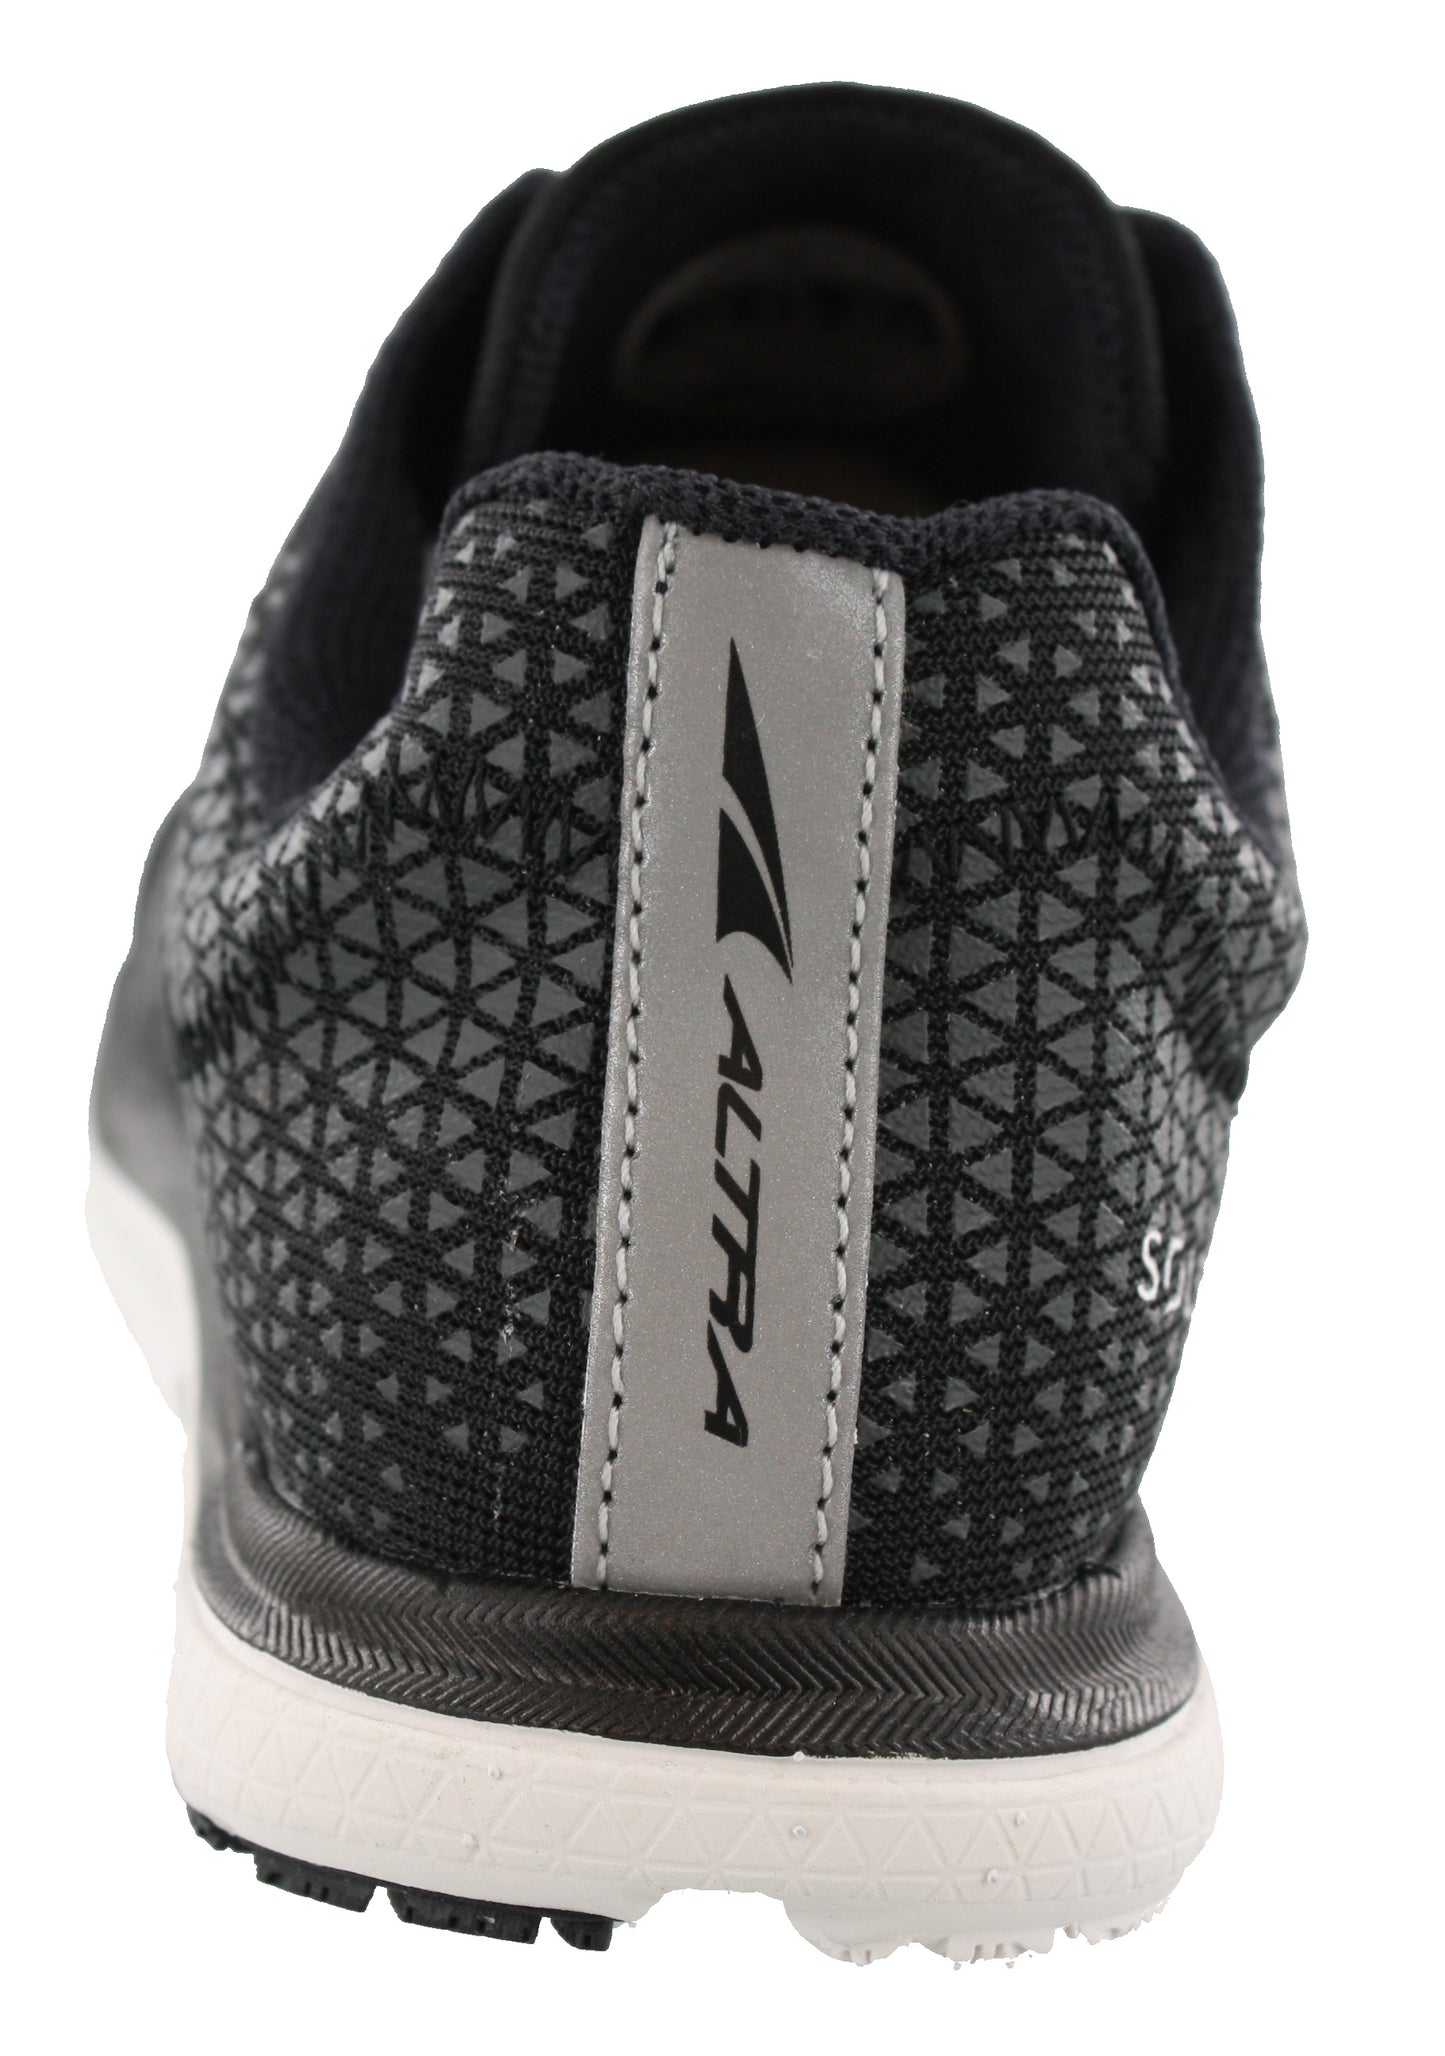 
                  
                    Back of Black Altra Men's Running Lightweight Platform Flexible Shoes Solstice
                  
                